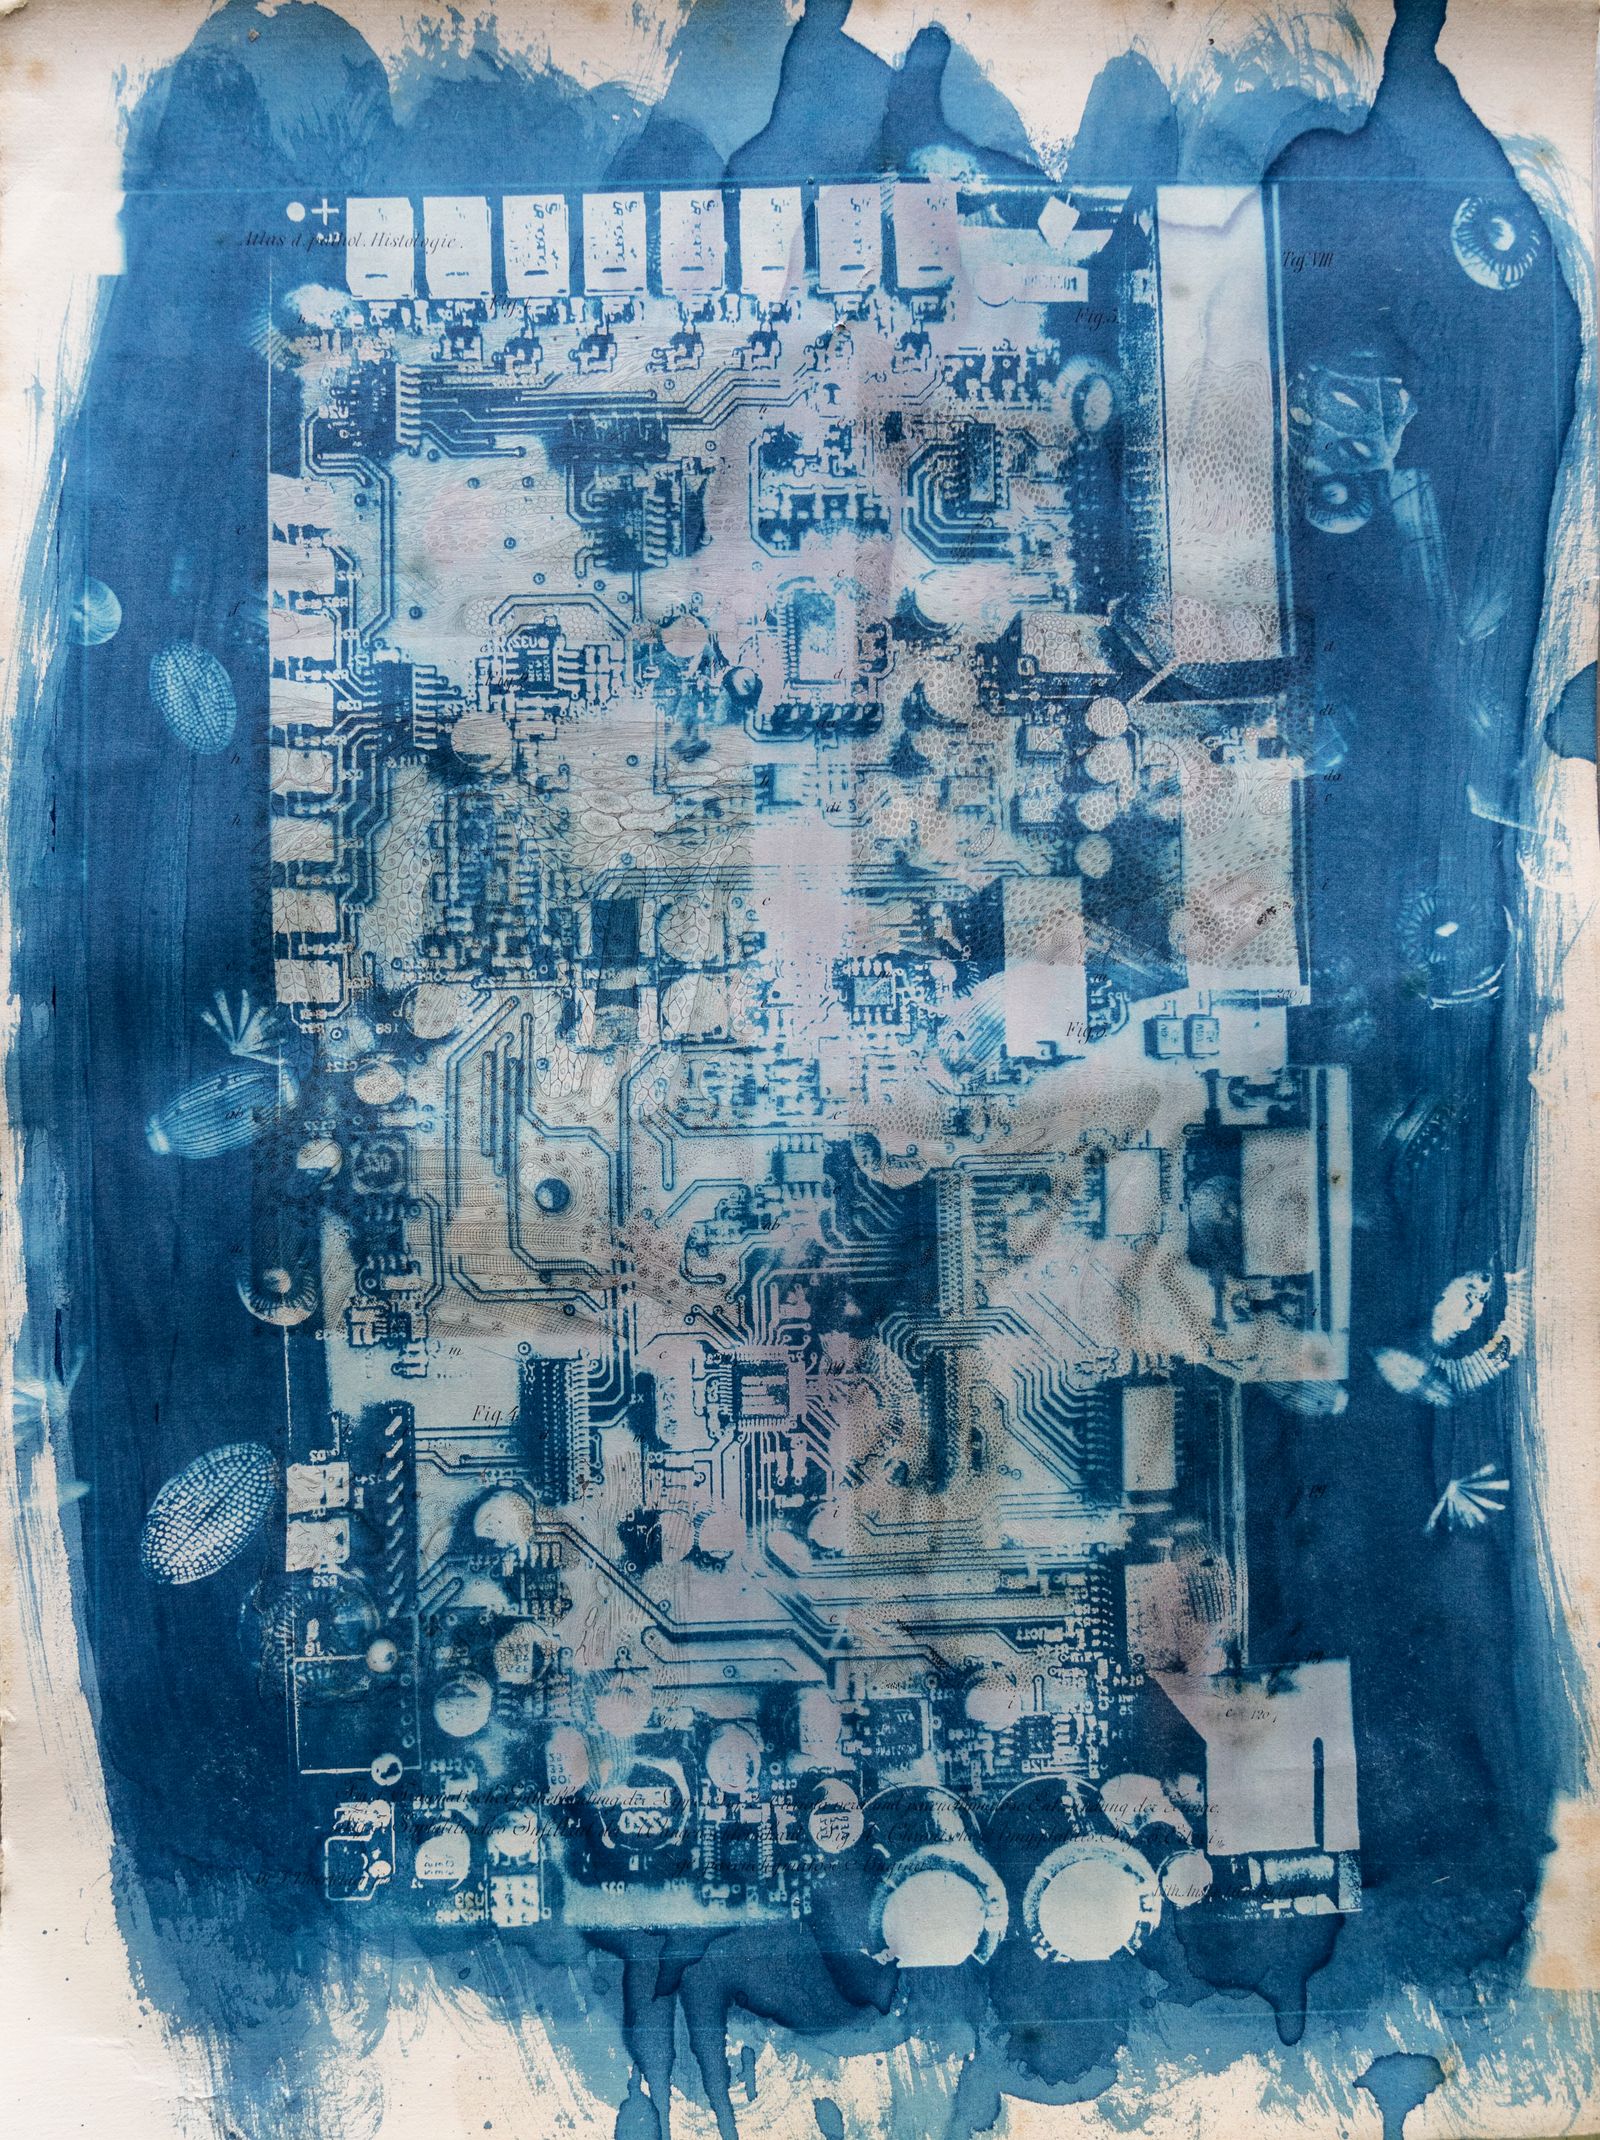 © Florence Iff - Amalgamated Fragmentation/ Technosphere 7 cyanotype on vintage lithography